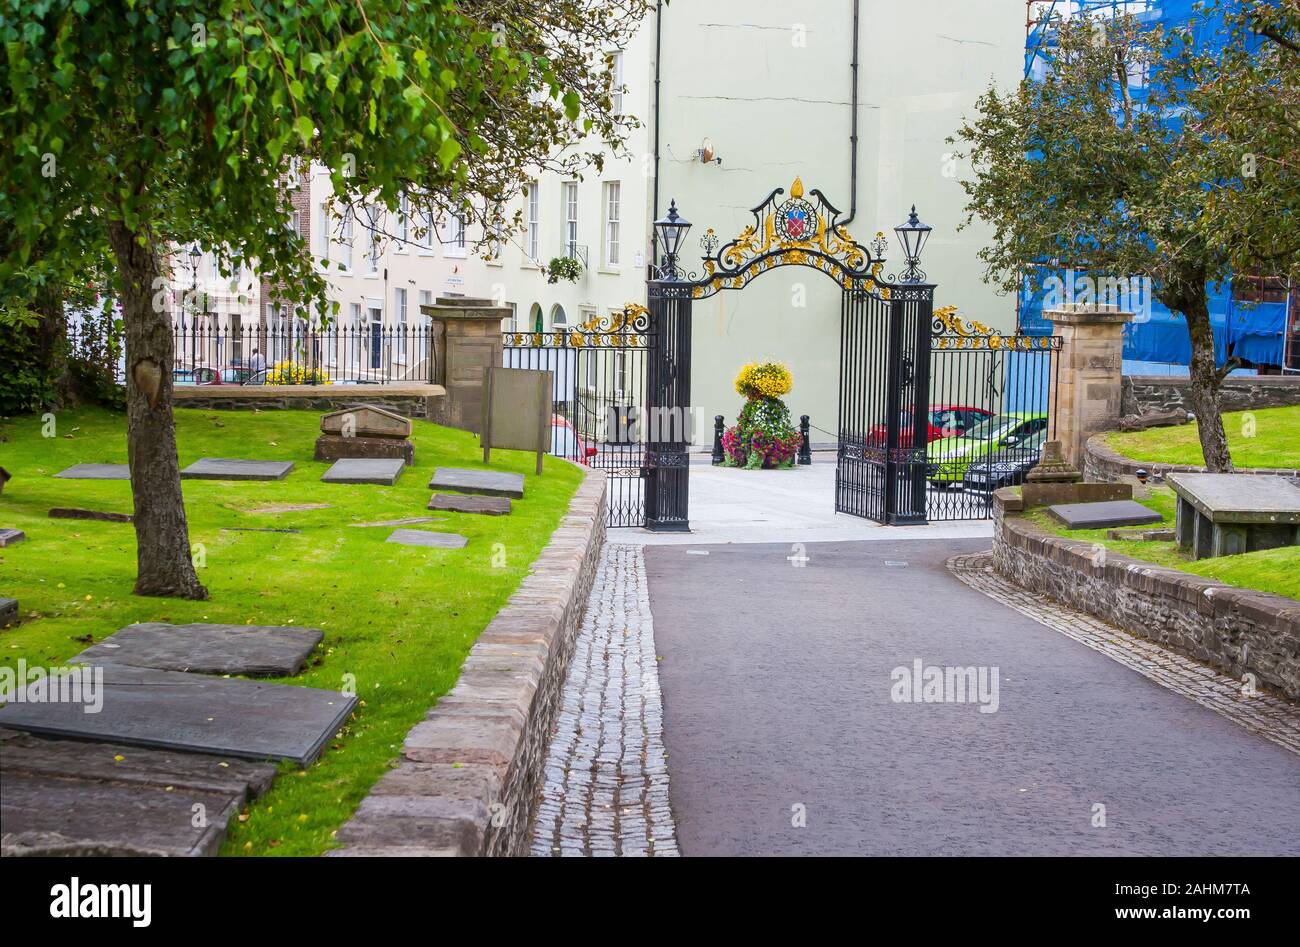 13 luglio 2014 gli ornati ornamentali in cancelli di ingresso di st columb's Cathedral all'interno delle antiche mura della città di Londonderry,nel centro storico della città Foto Stock